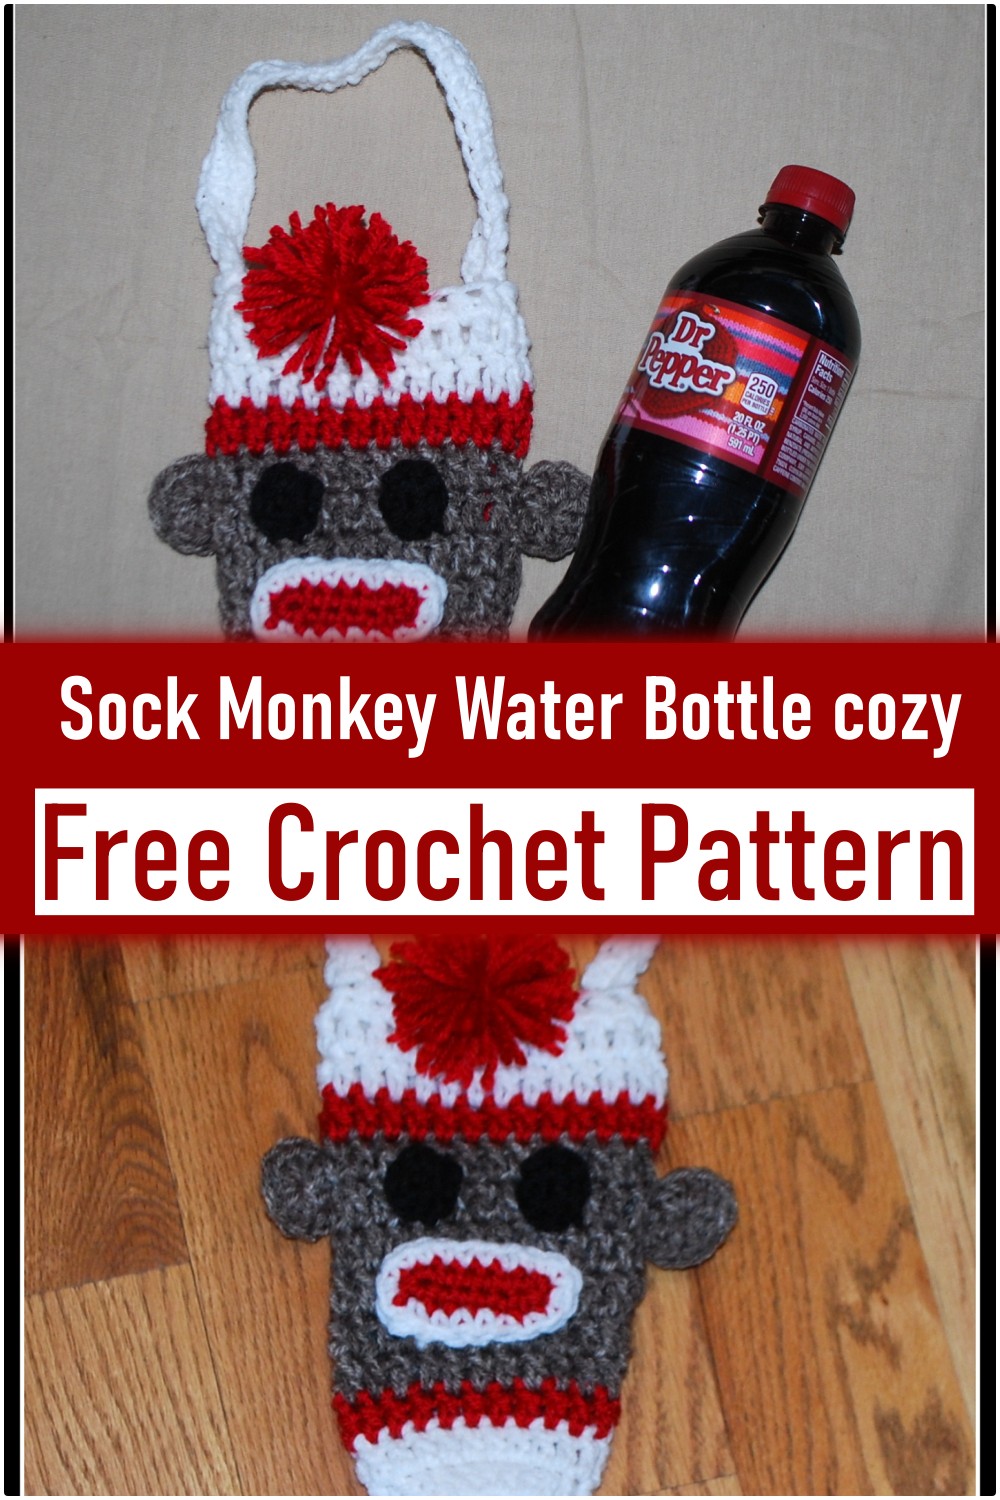 Sock Monkey Water Bottle cozy